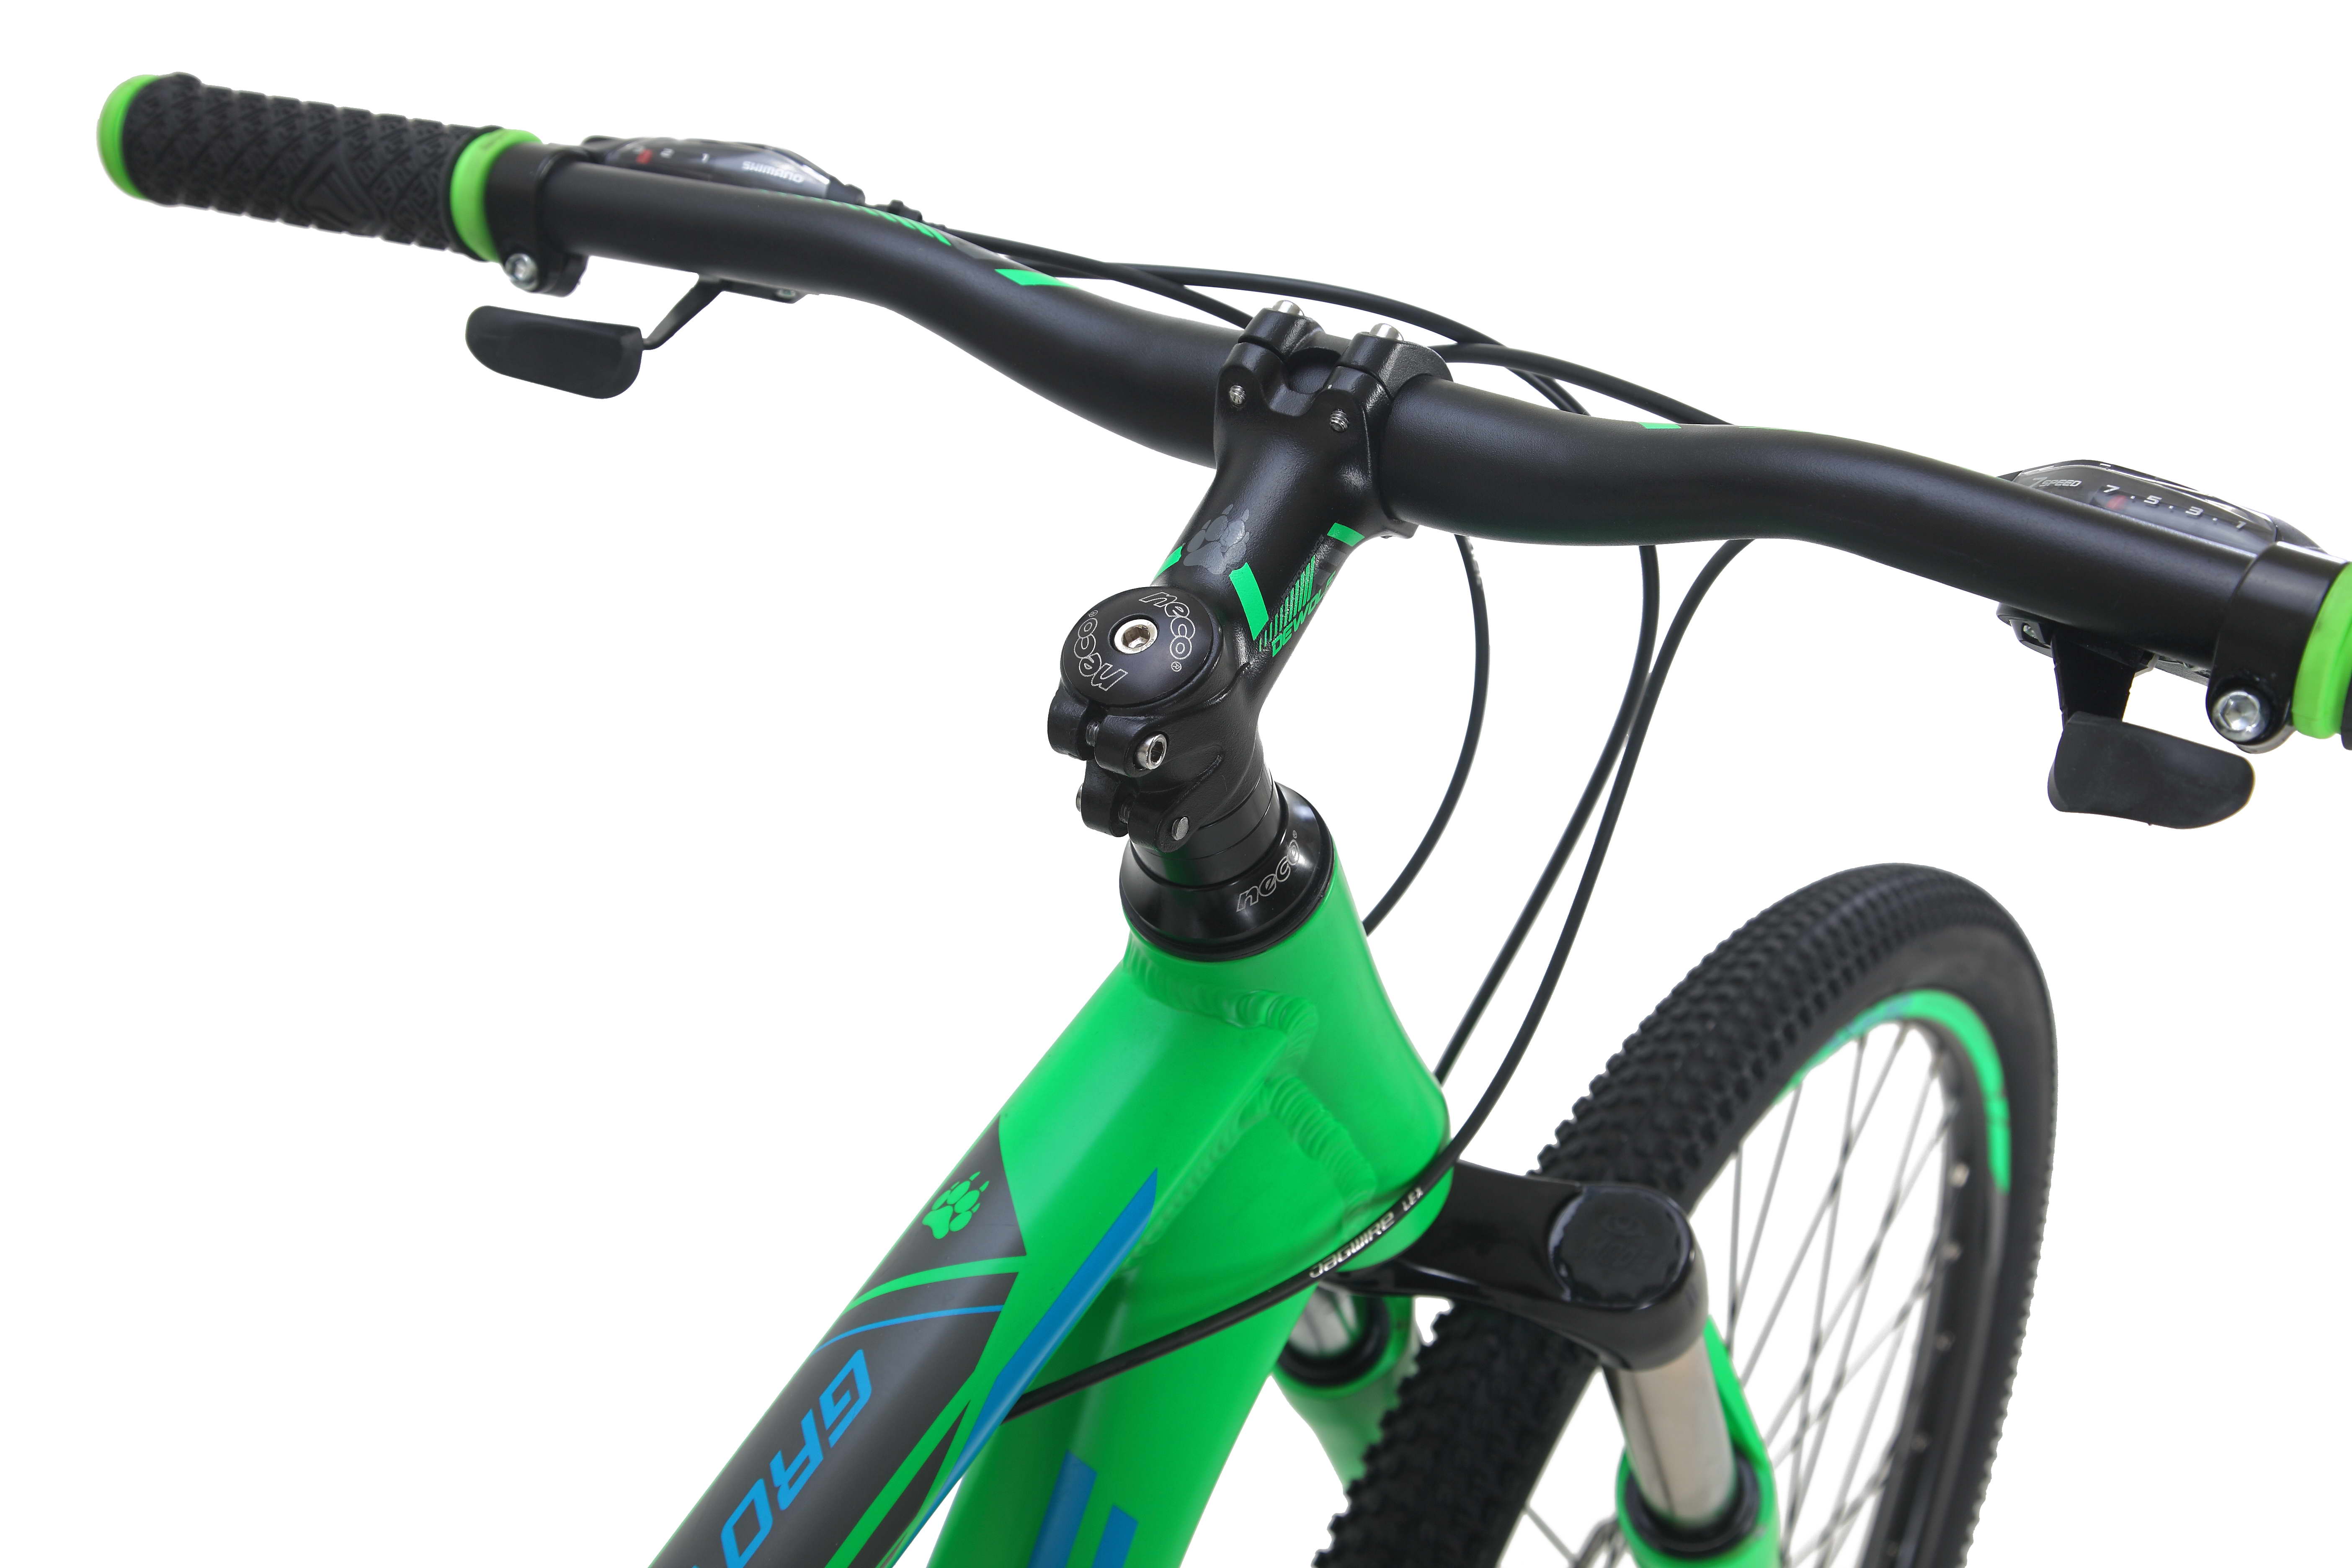 Велосипед Dewolf GROW 40, размер неоновый ярко-зеленый